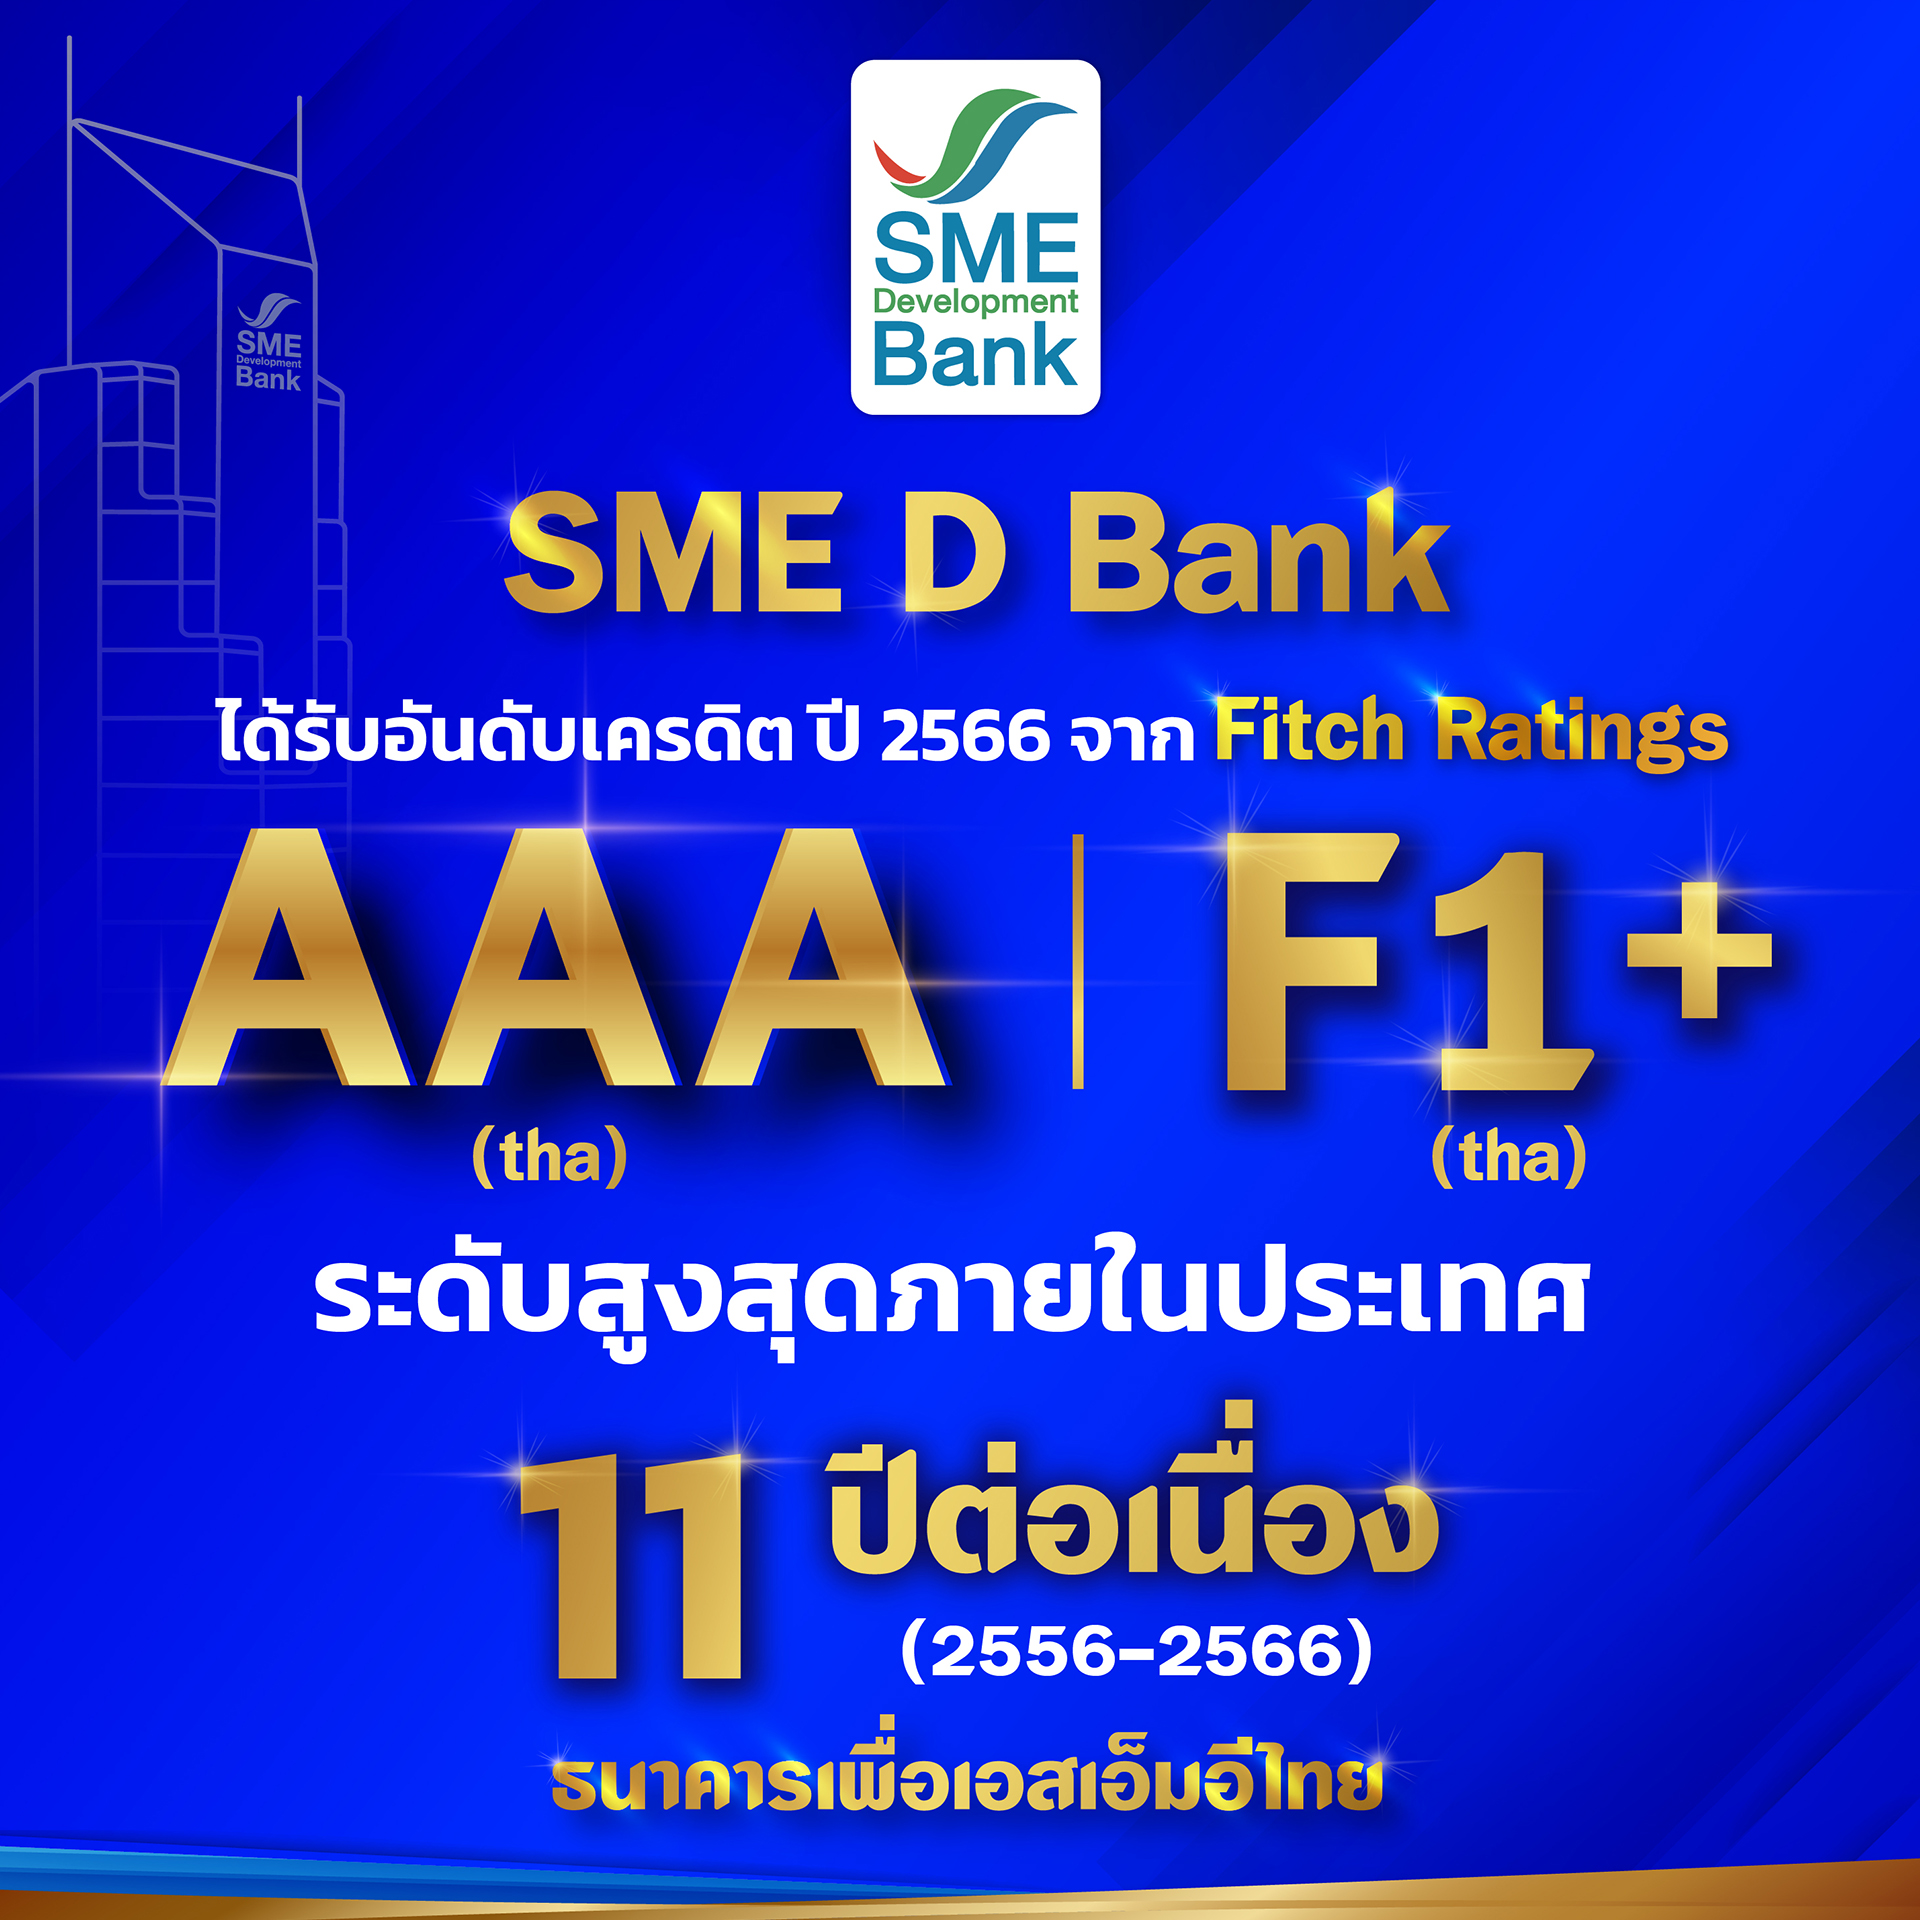 SME D Bank รับจัดอันดับ ‘ฟิทช์ เรทติ้งส์” ระดับ AAA(tha) สูงสุดในประเทศต่อเนื่อง 11 ปี จากบทบาท ‘ธนาคารเพื่อเอสเอ็มอีไทย’ กลไกสำคัญในการขับเคลื่อนเศรษฐกิจประเทศ